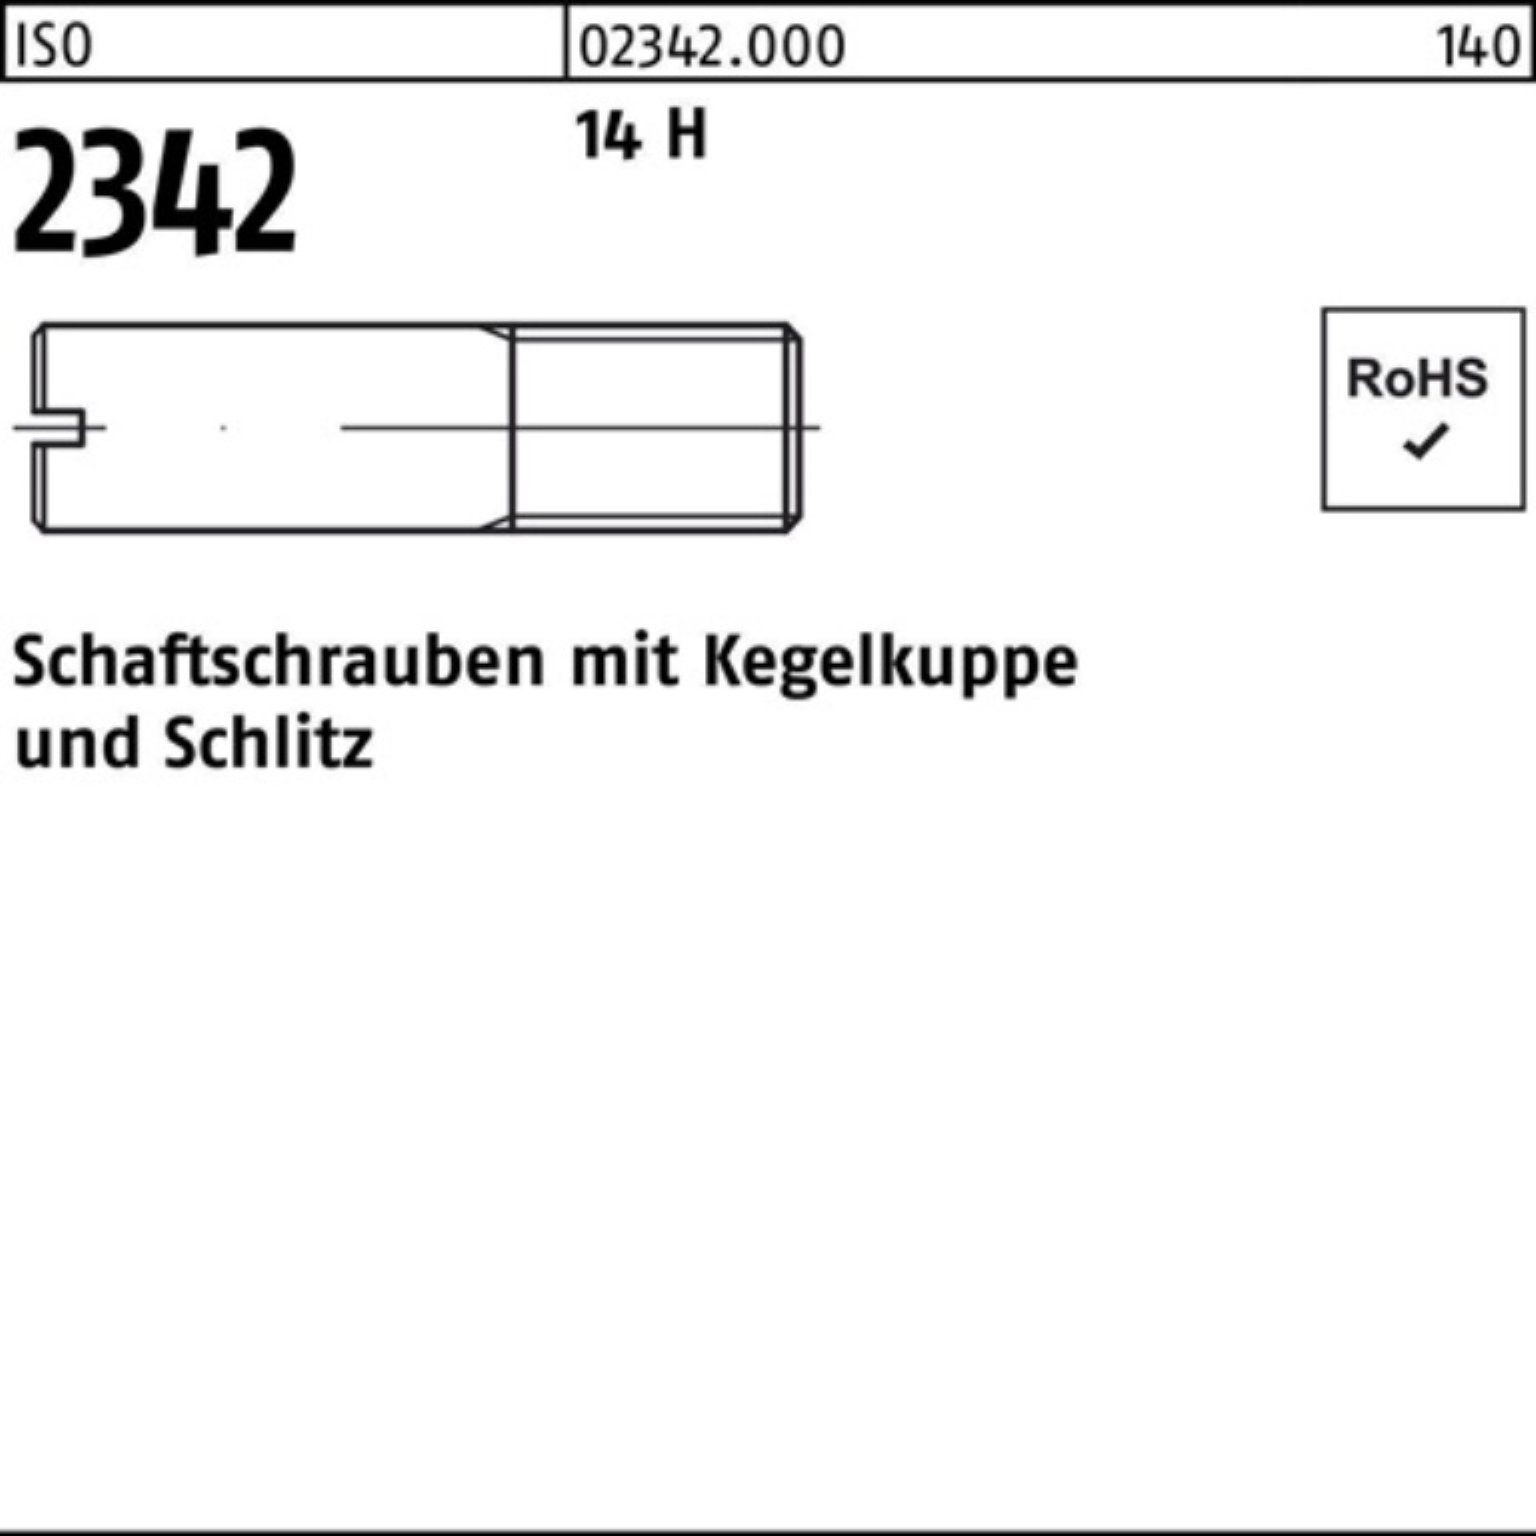 Reyher 35 H M5x 14 100er 100 2342 ISO Pack Schaftschraube Kegelkuppe/Schlitz Schraube